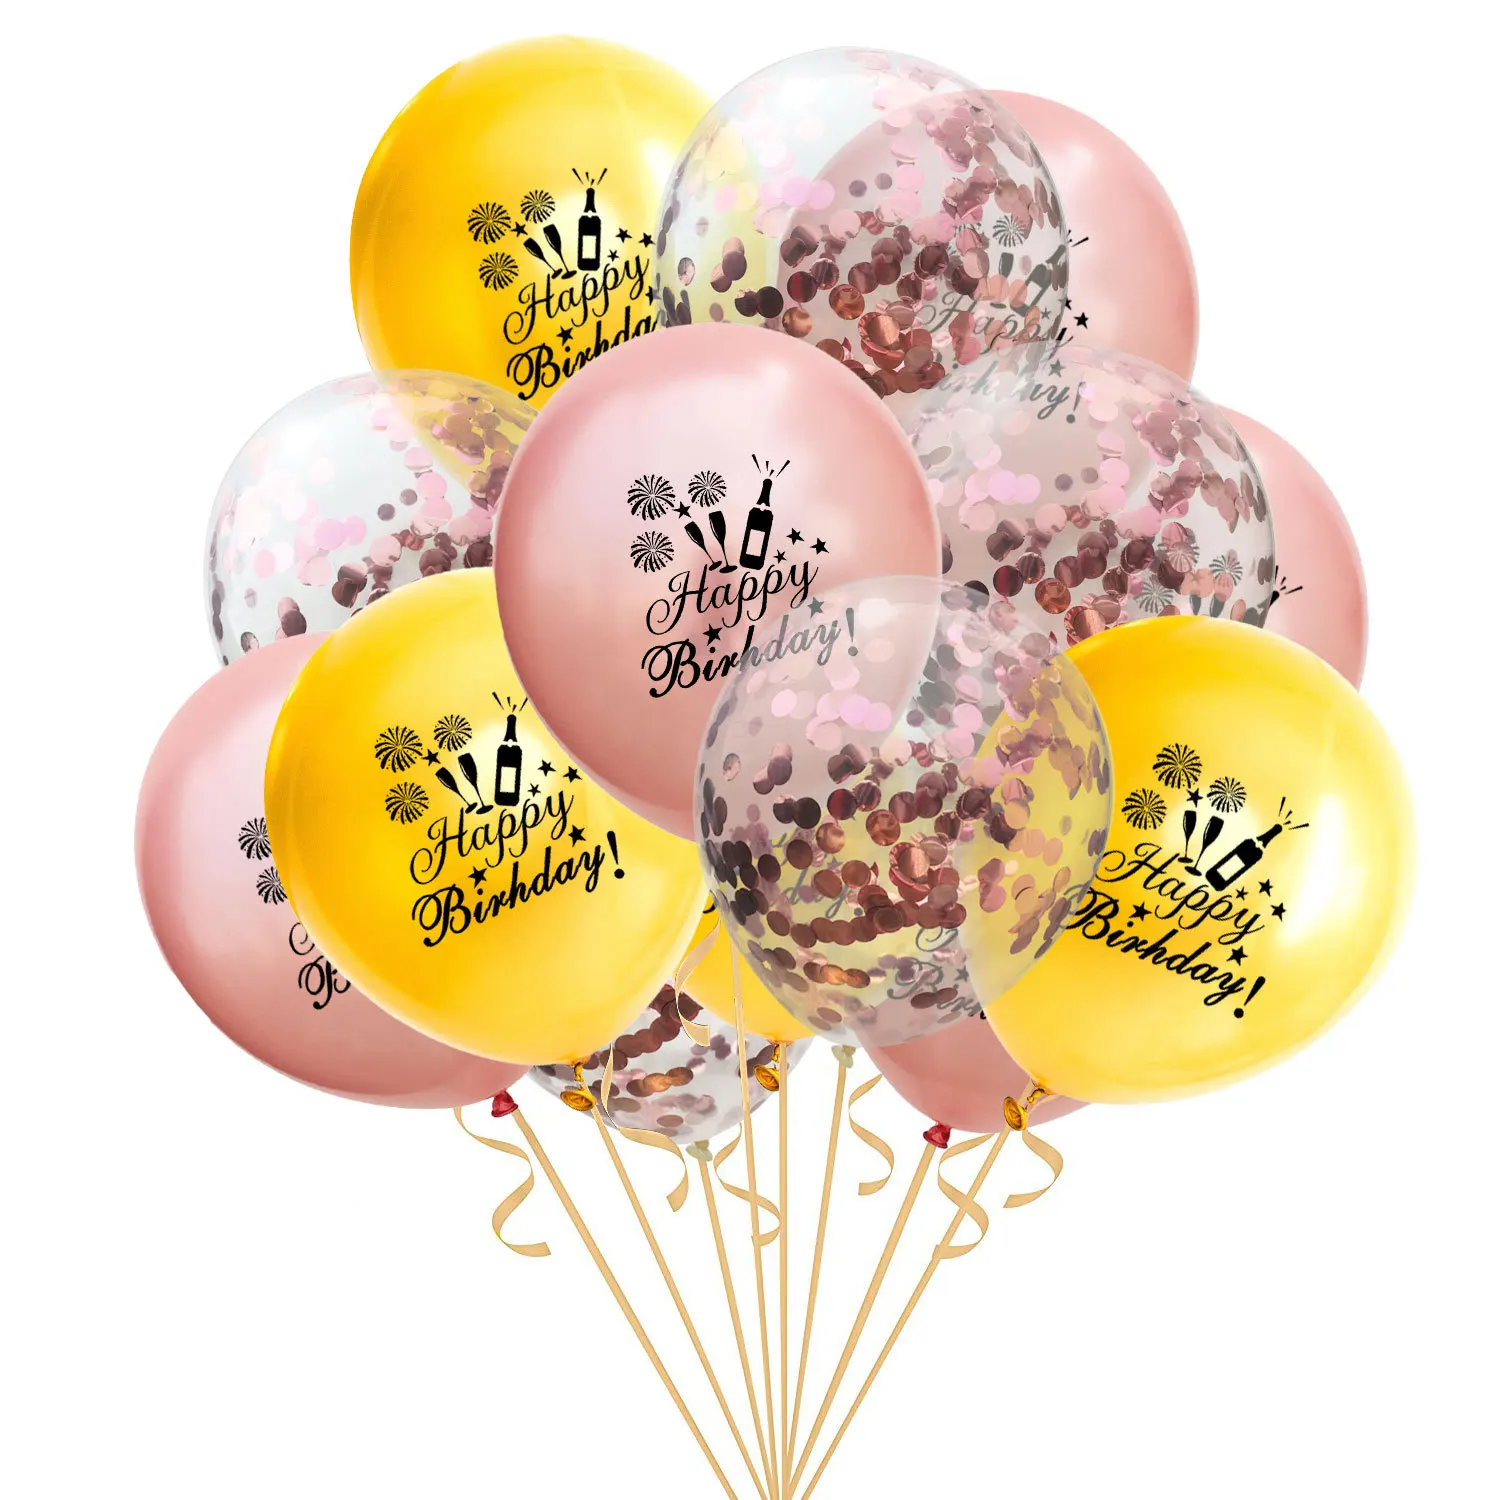 С днем рождения набор воздушных шаров микс Звезда фольга балон розовое золото конфетти шары из латекса бутылка шампанского с днем рождения украшения